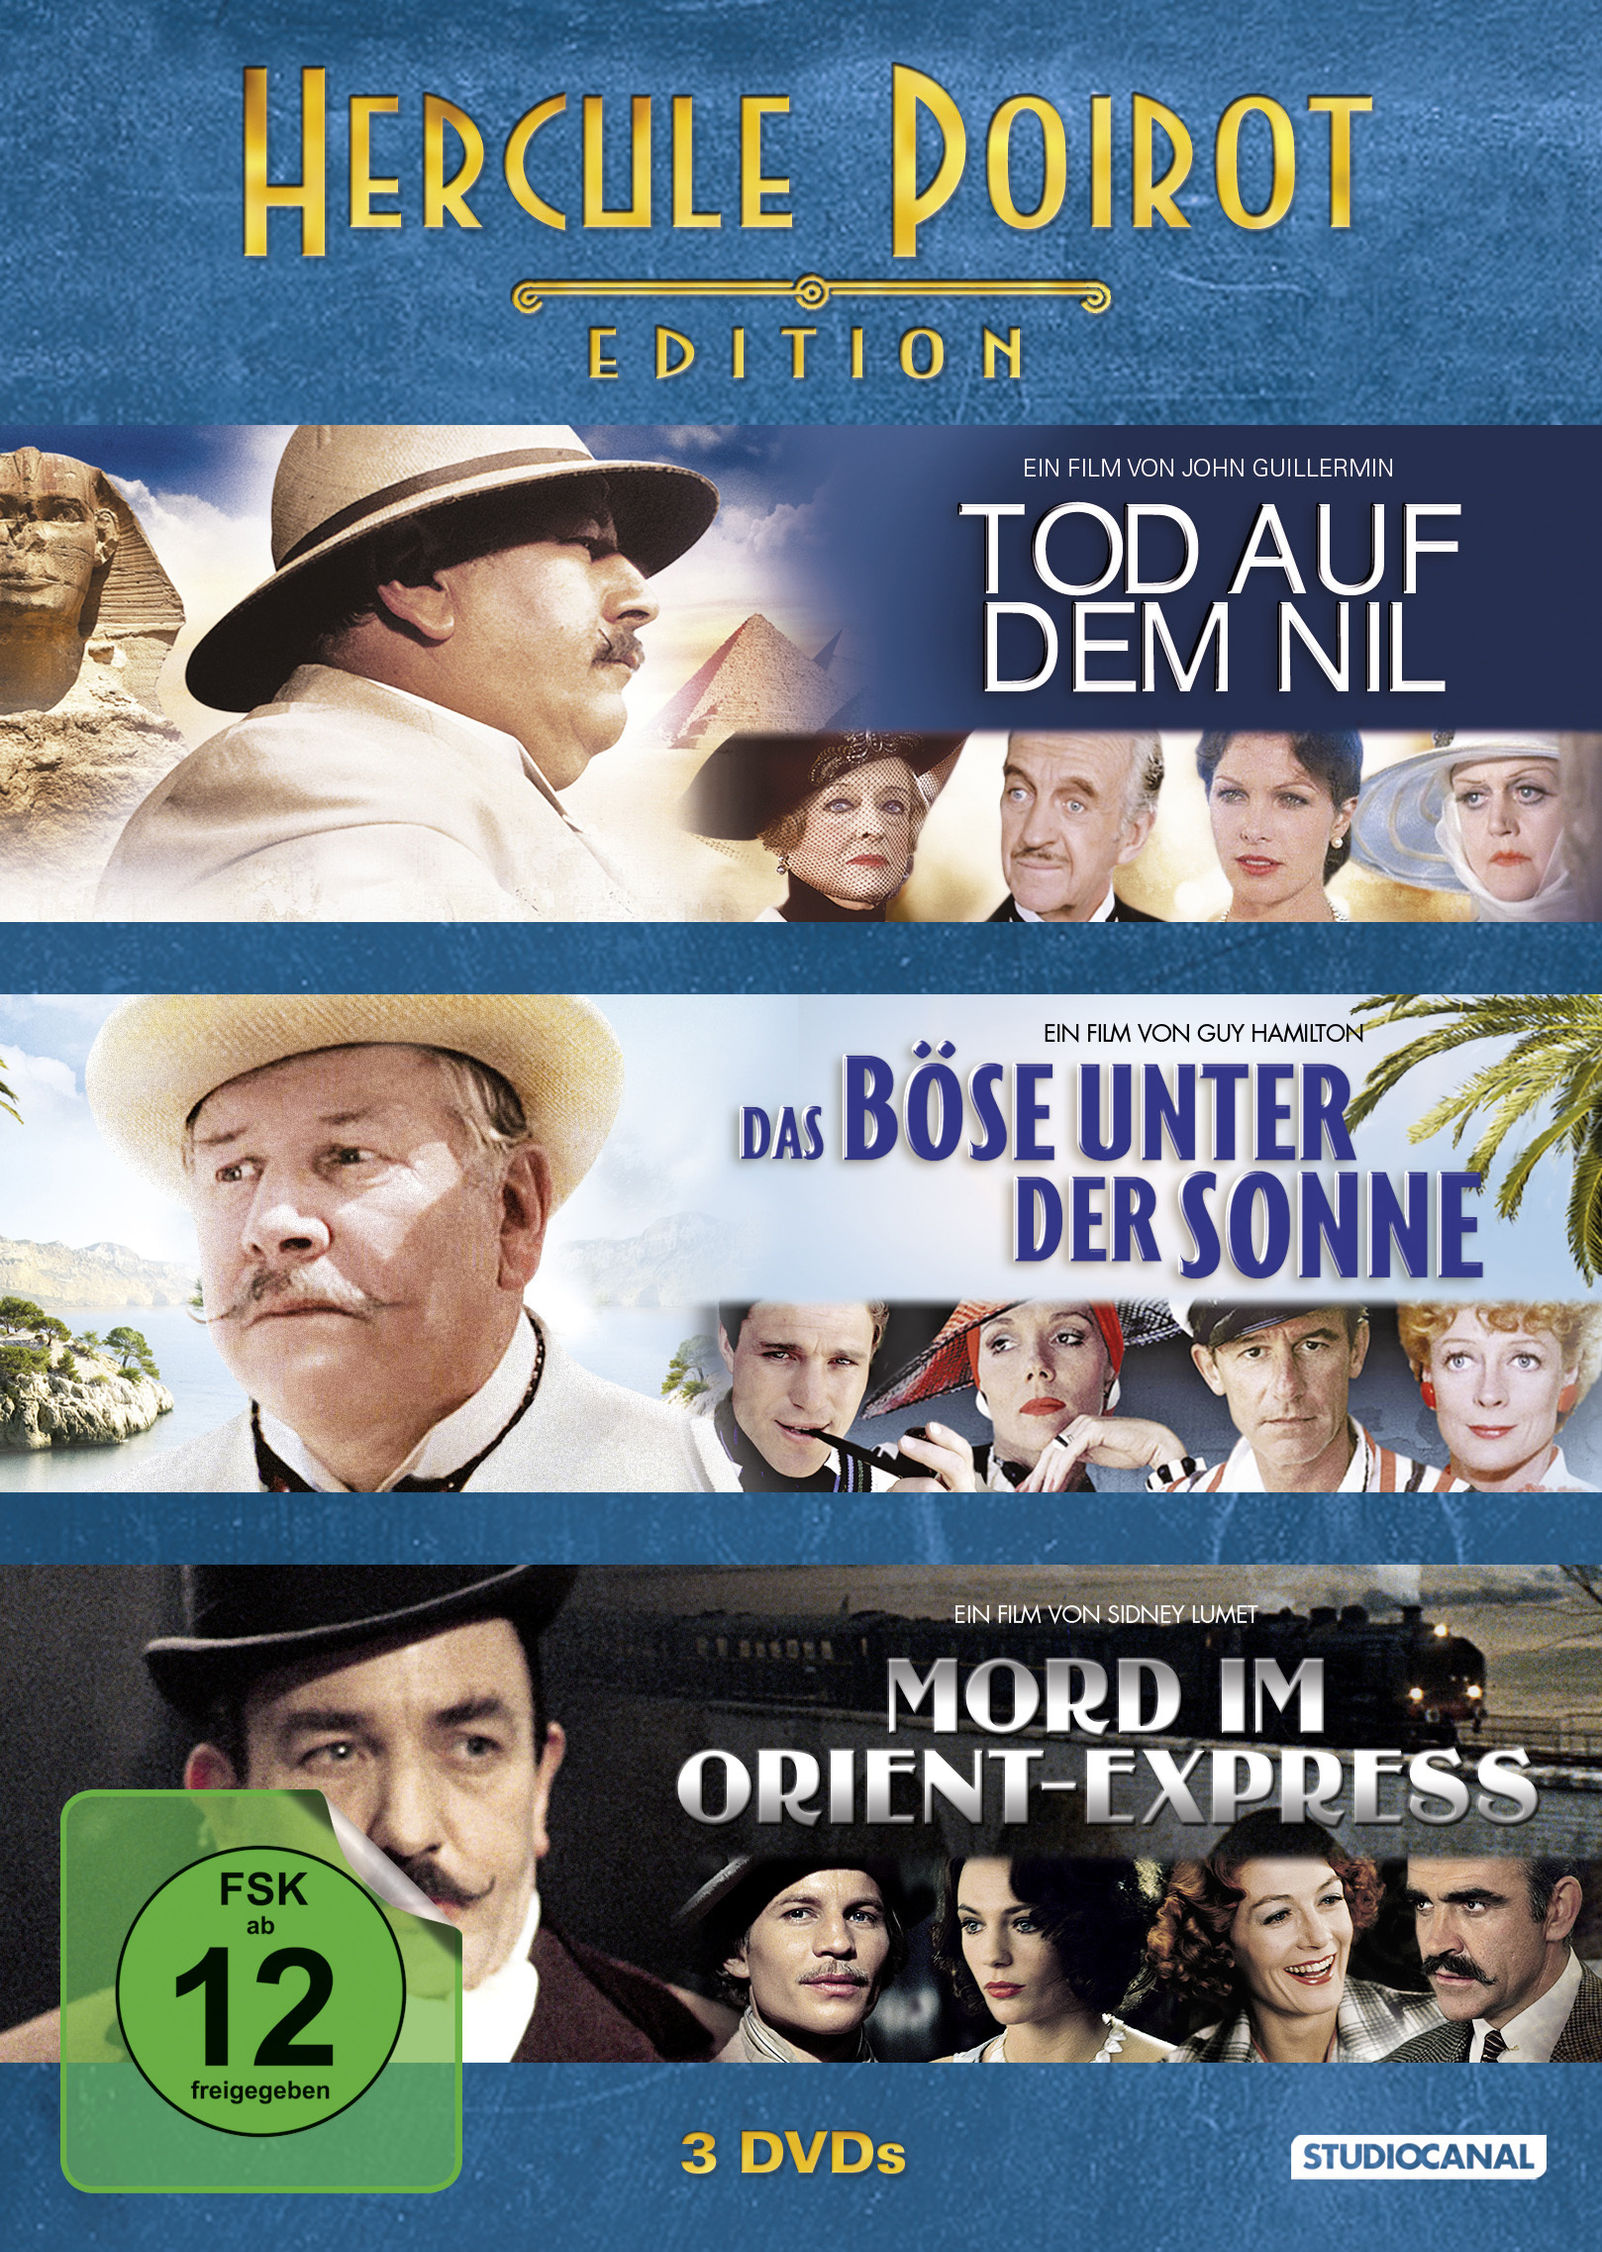 Hercule Poirot Edition DVD jetzt bei Weltbild.ch online bestellen